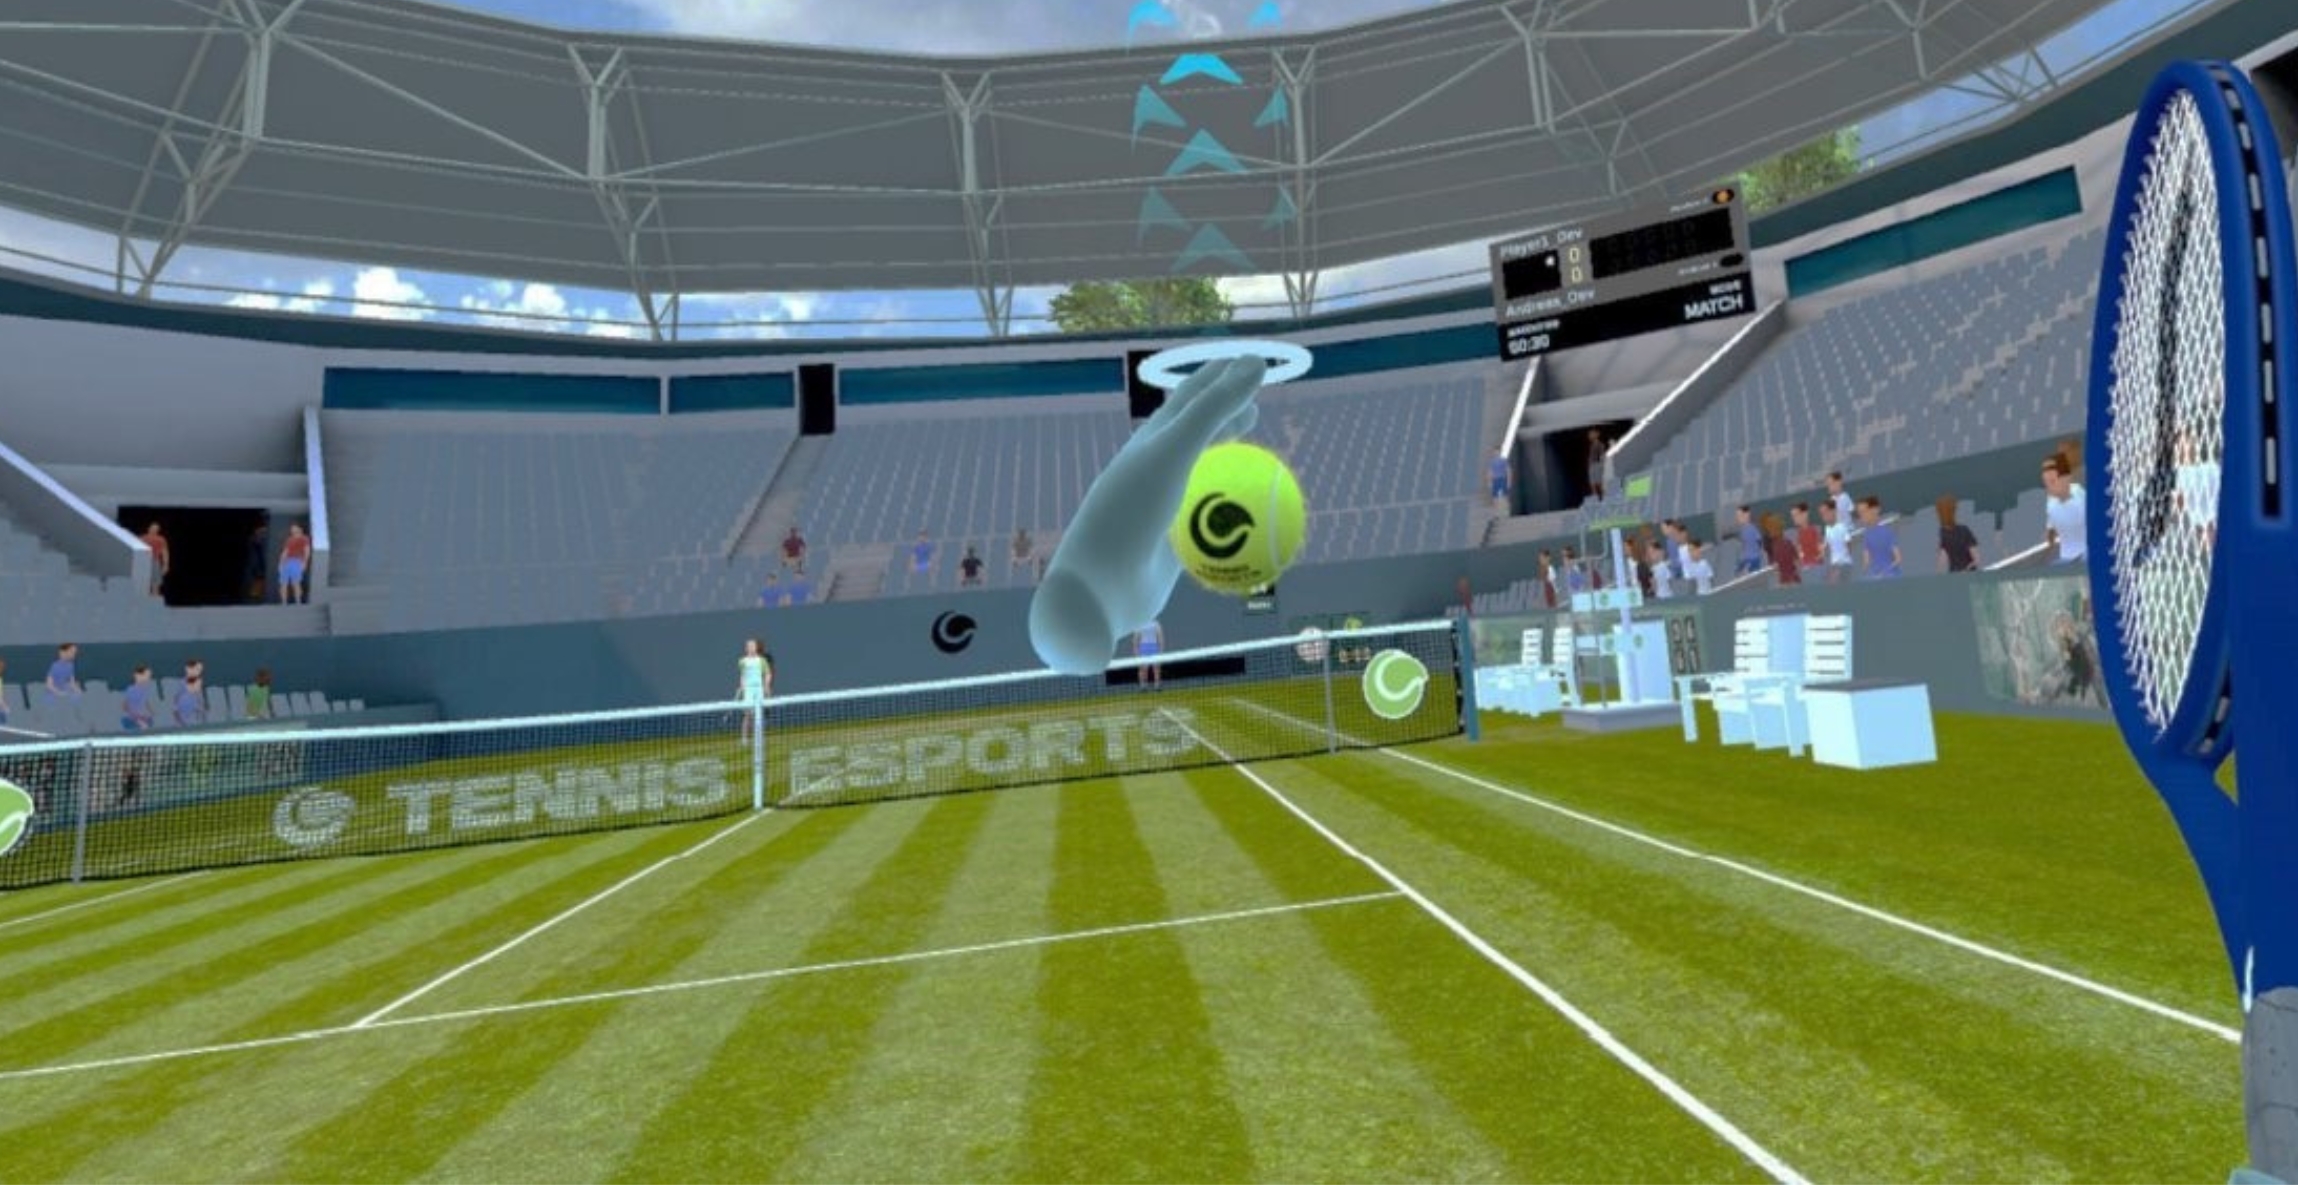 Laola1 bringt erstes VR-Tennis-Turnier nach Europa brutkasten